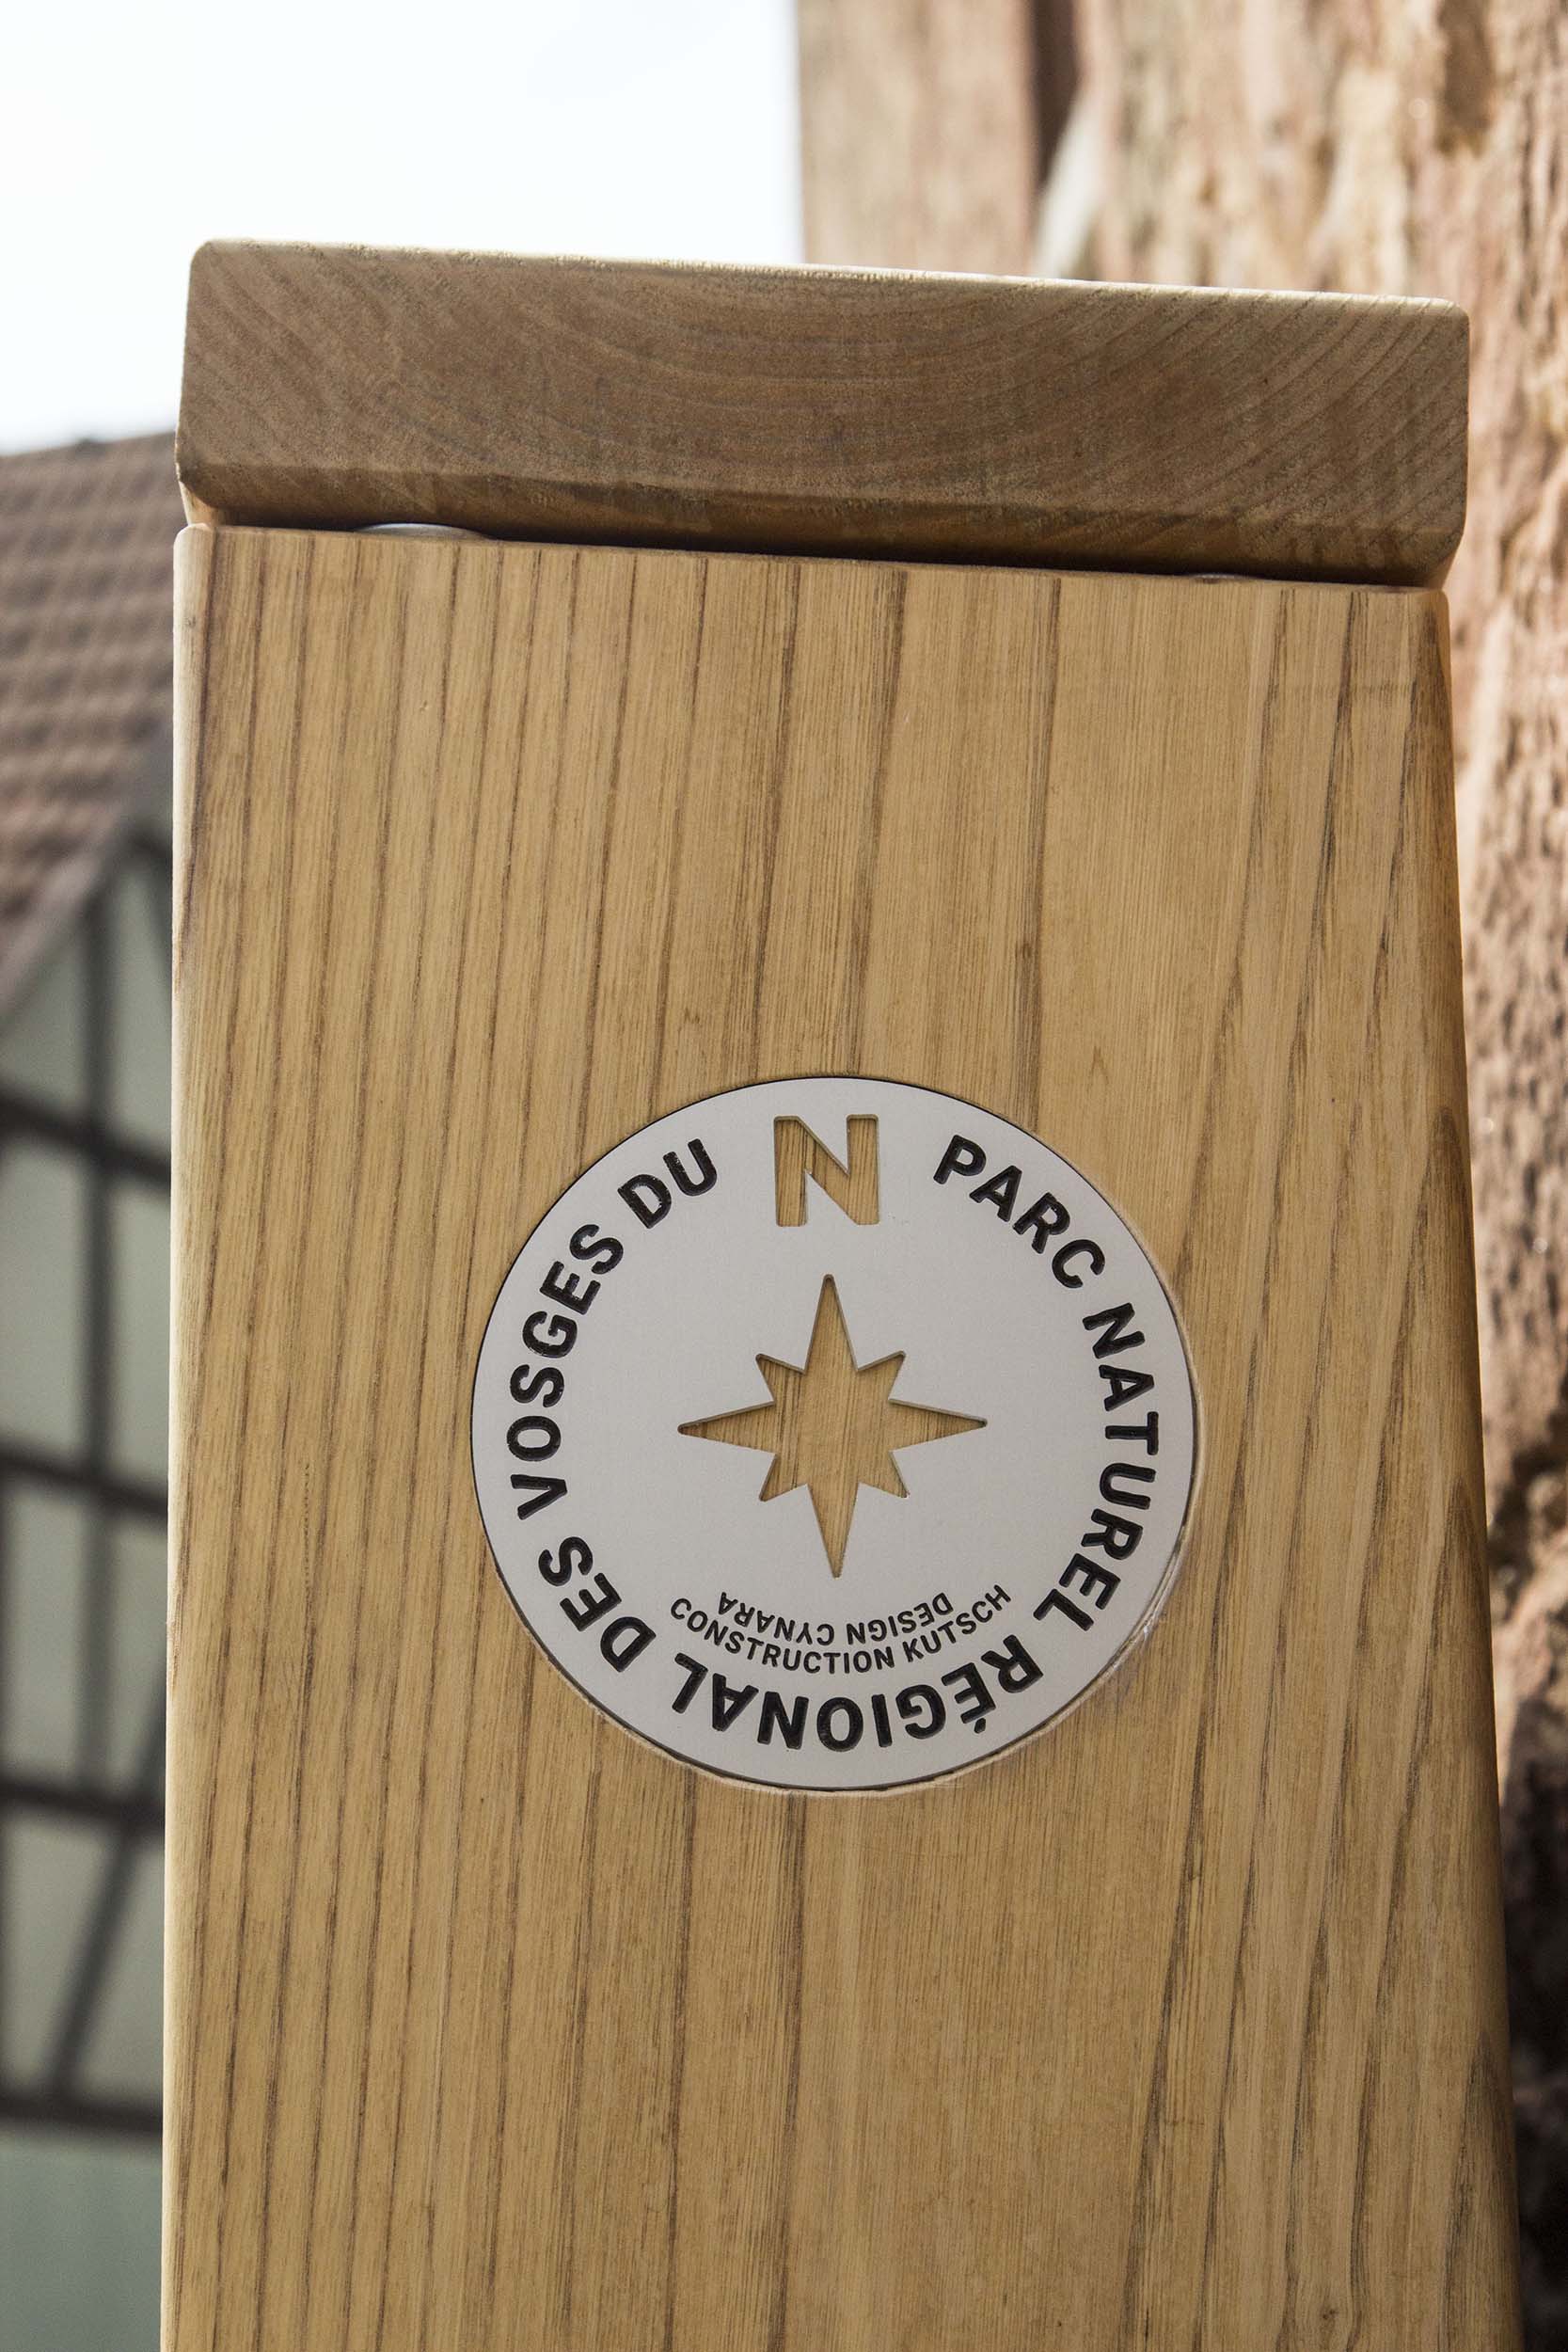 Médaillon-boussole gravé sur aluminium, en inclusion dans le mobilier, avec écrit "Parc naturel régional des Vosges du Nord, Design Cynara, Construction Kutsch"